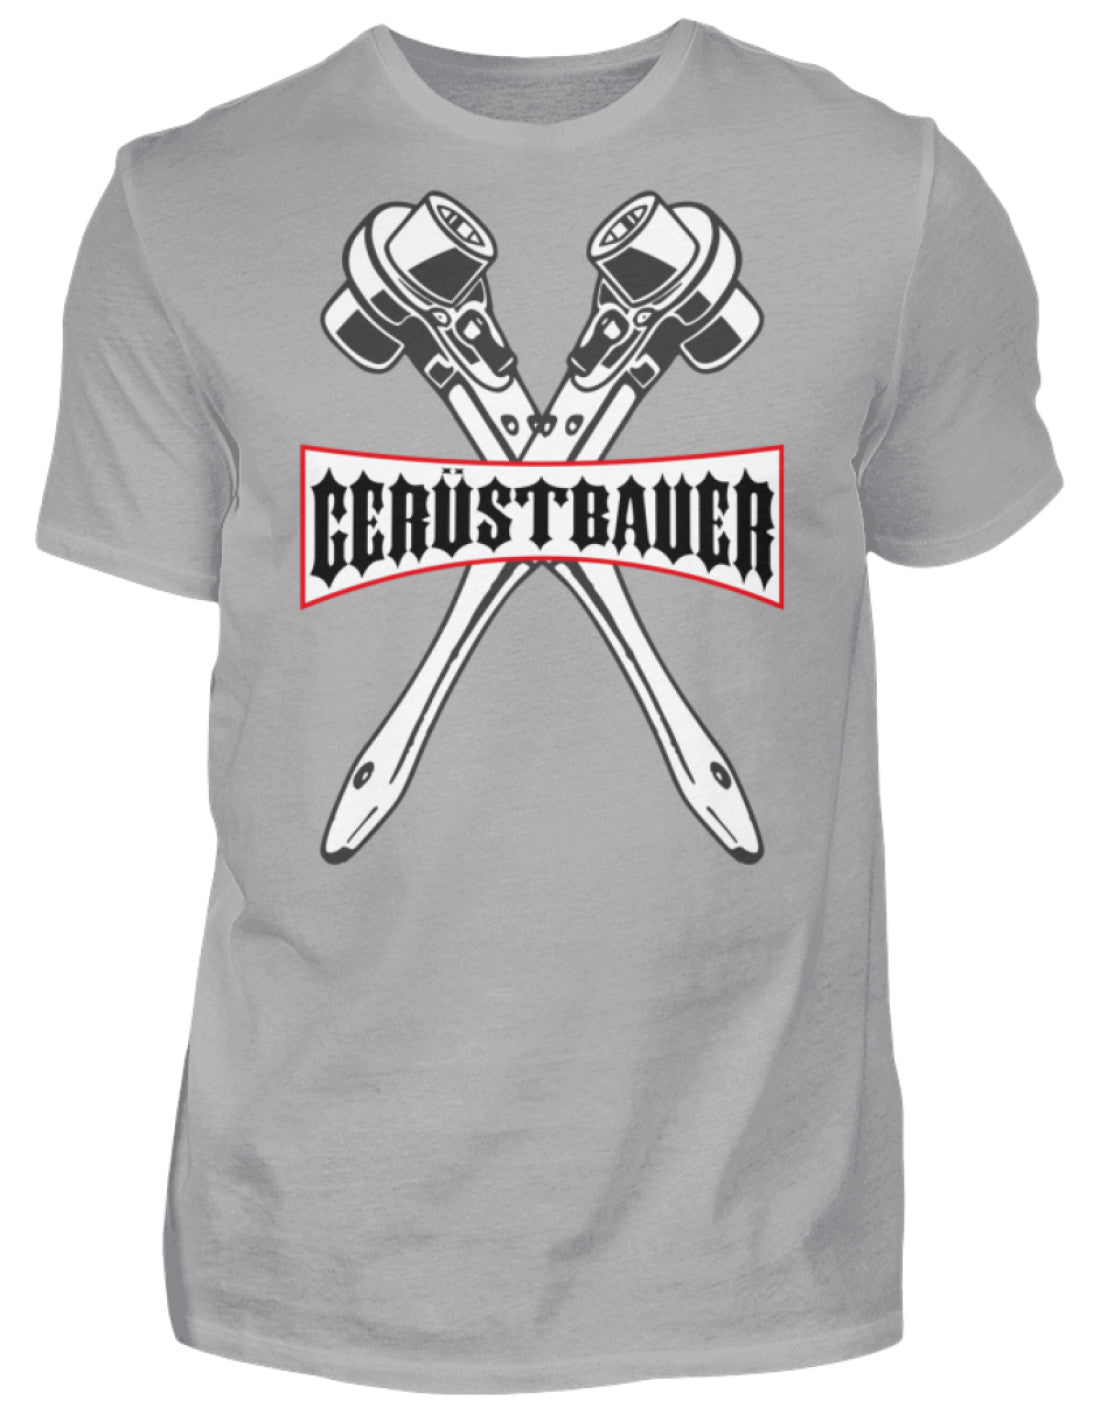 Gerüstbauer  - Herren Premiumshirt €23.95 Gerüstbauer - Shop >>